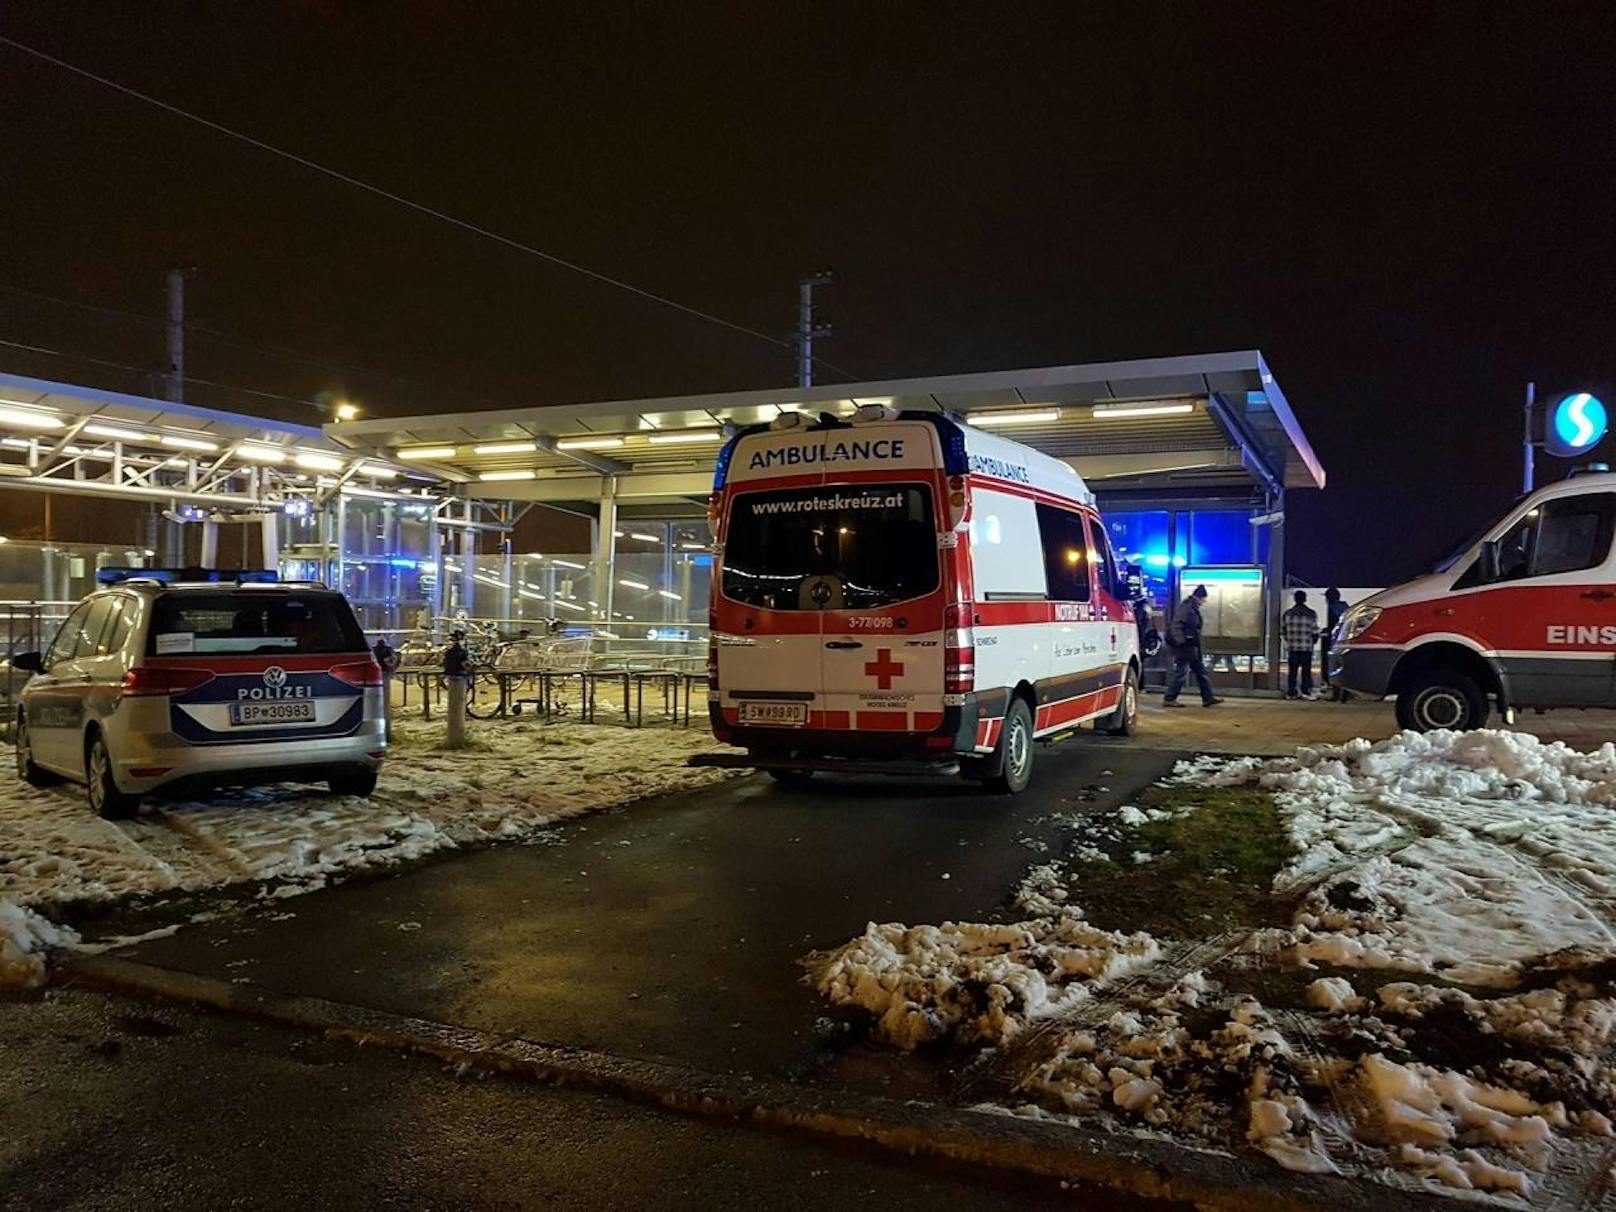 Großer Rettungseinsatz am Bahnhof Kaiserebersdorf - eine Frau wurde von einem Zug erfasst.